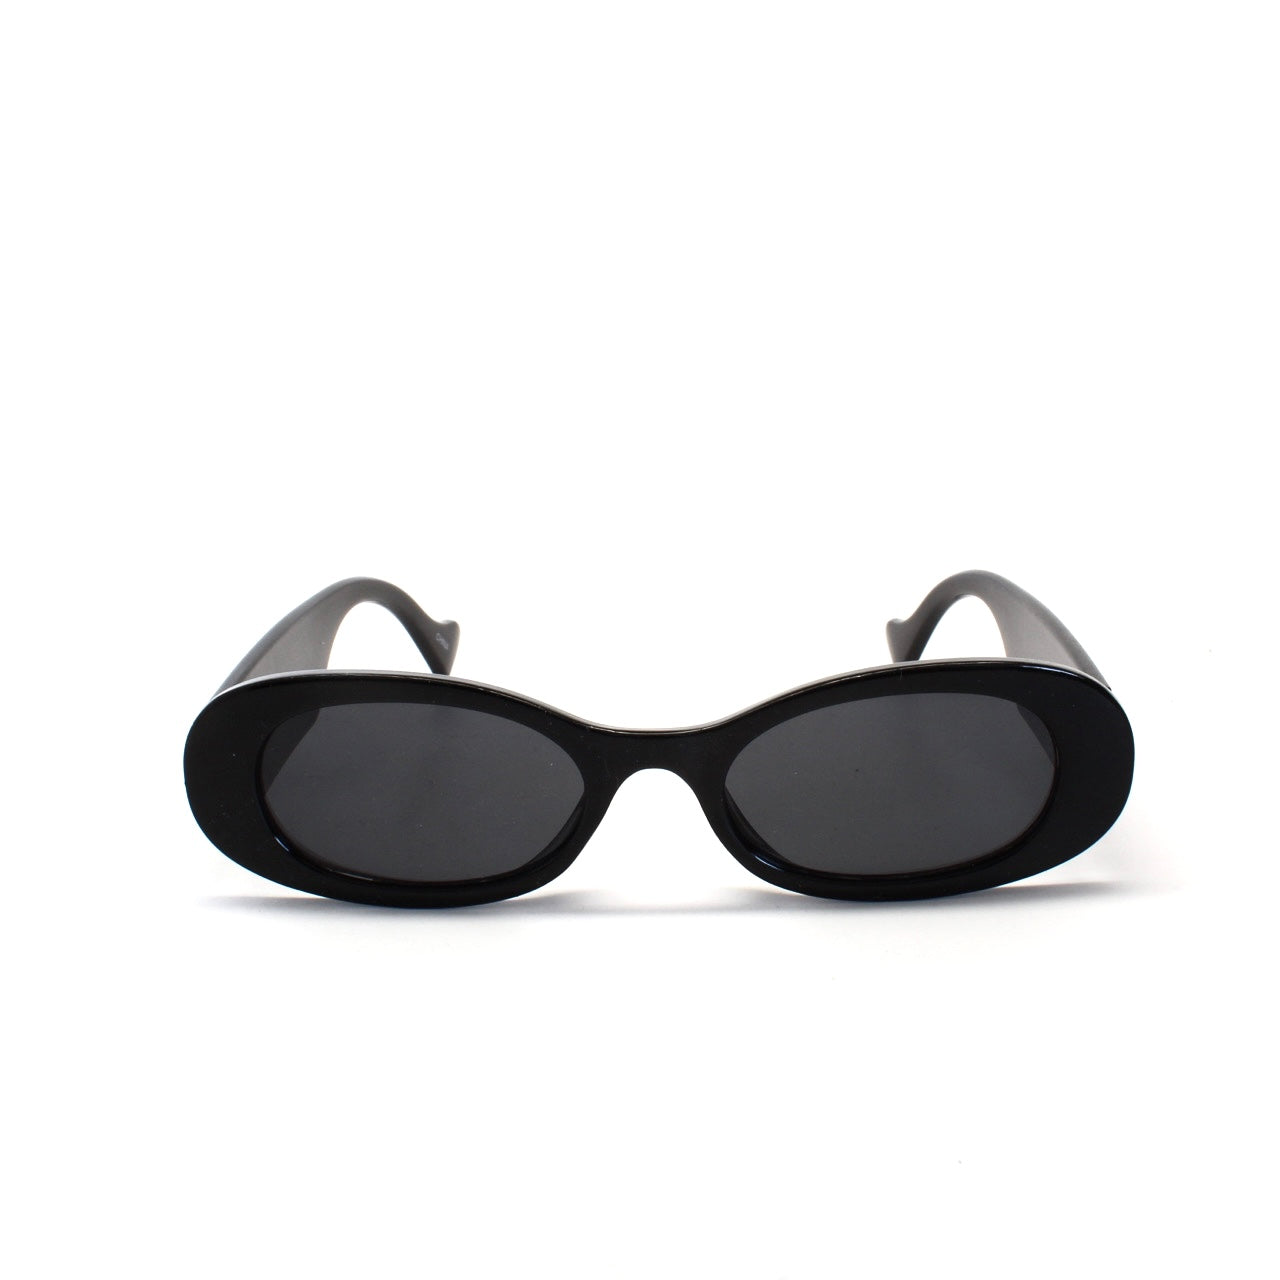 Retro Hermosa Oval Sunglasses - Black